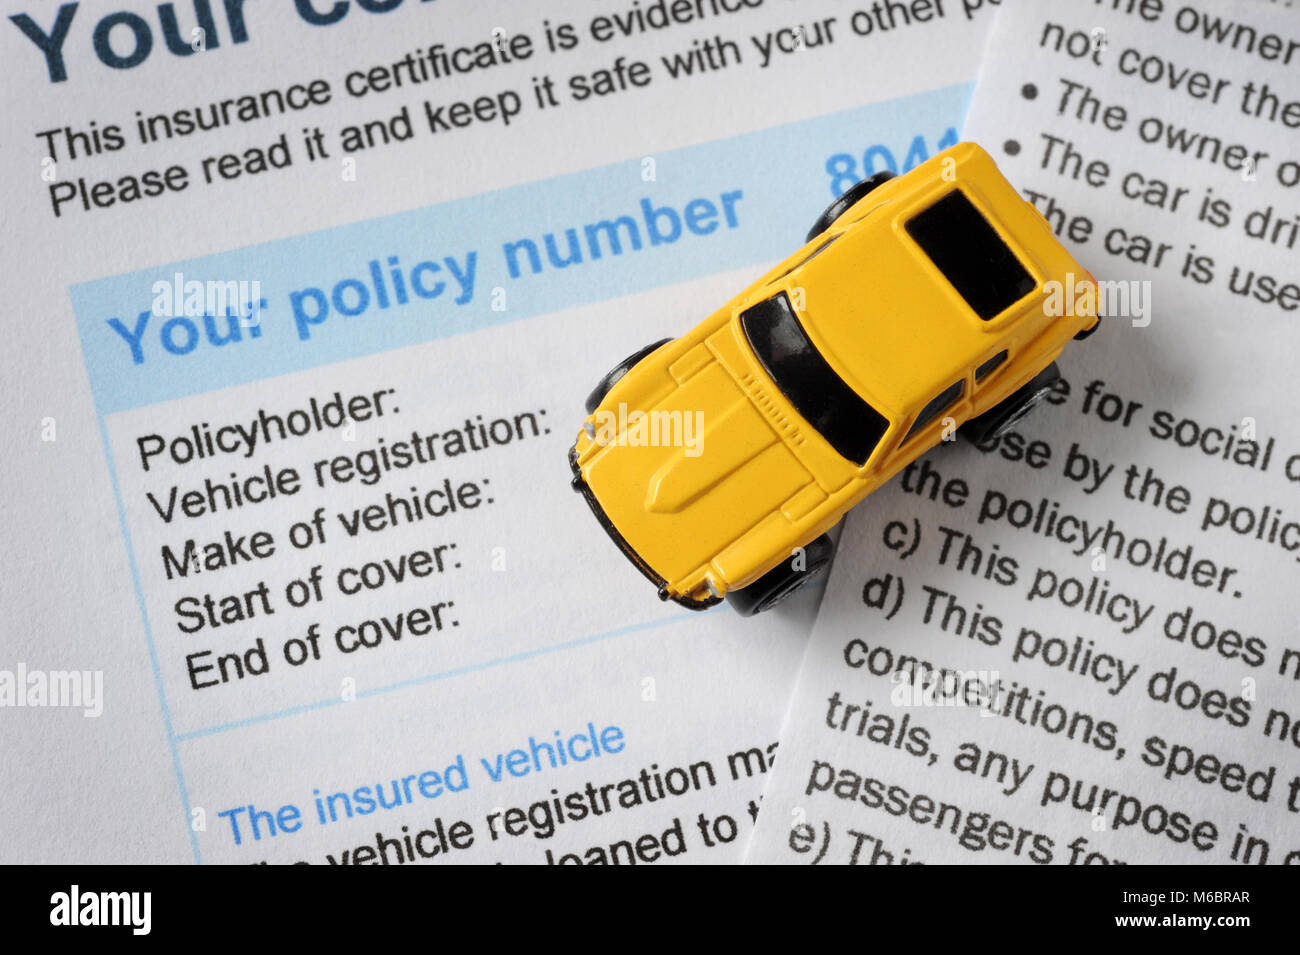 Giocattolo auto con assicurazione auto certificato ri precedenti motori politica premi crescente costo ETC REGNO UNITO Foto Stock